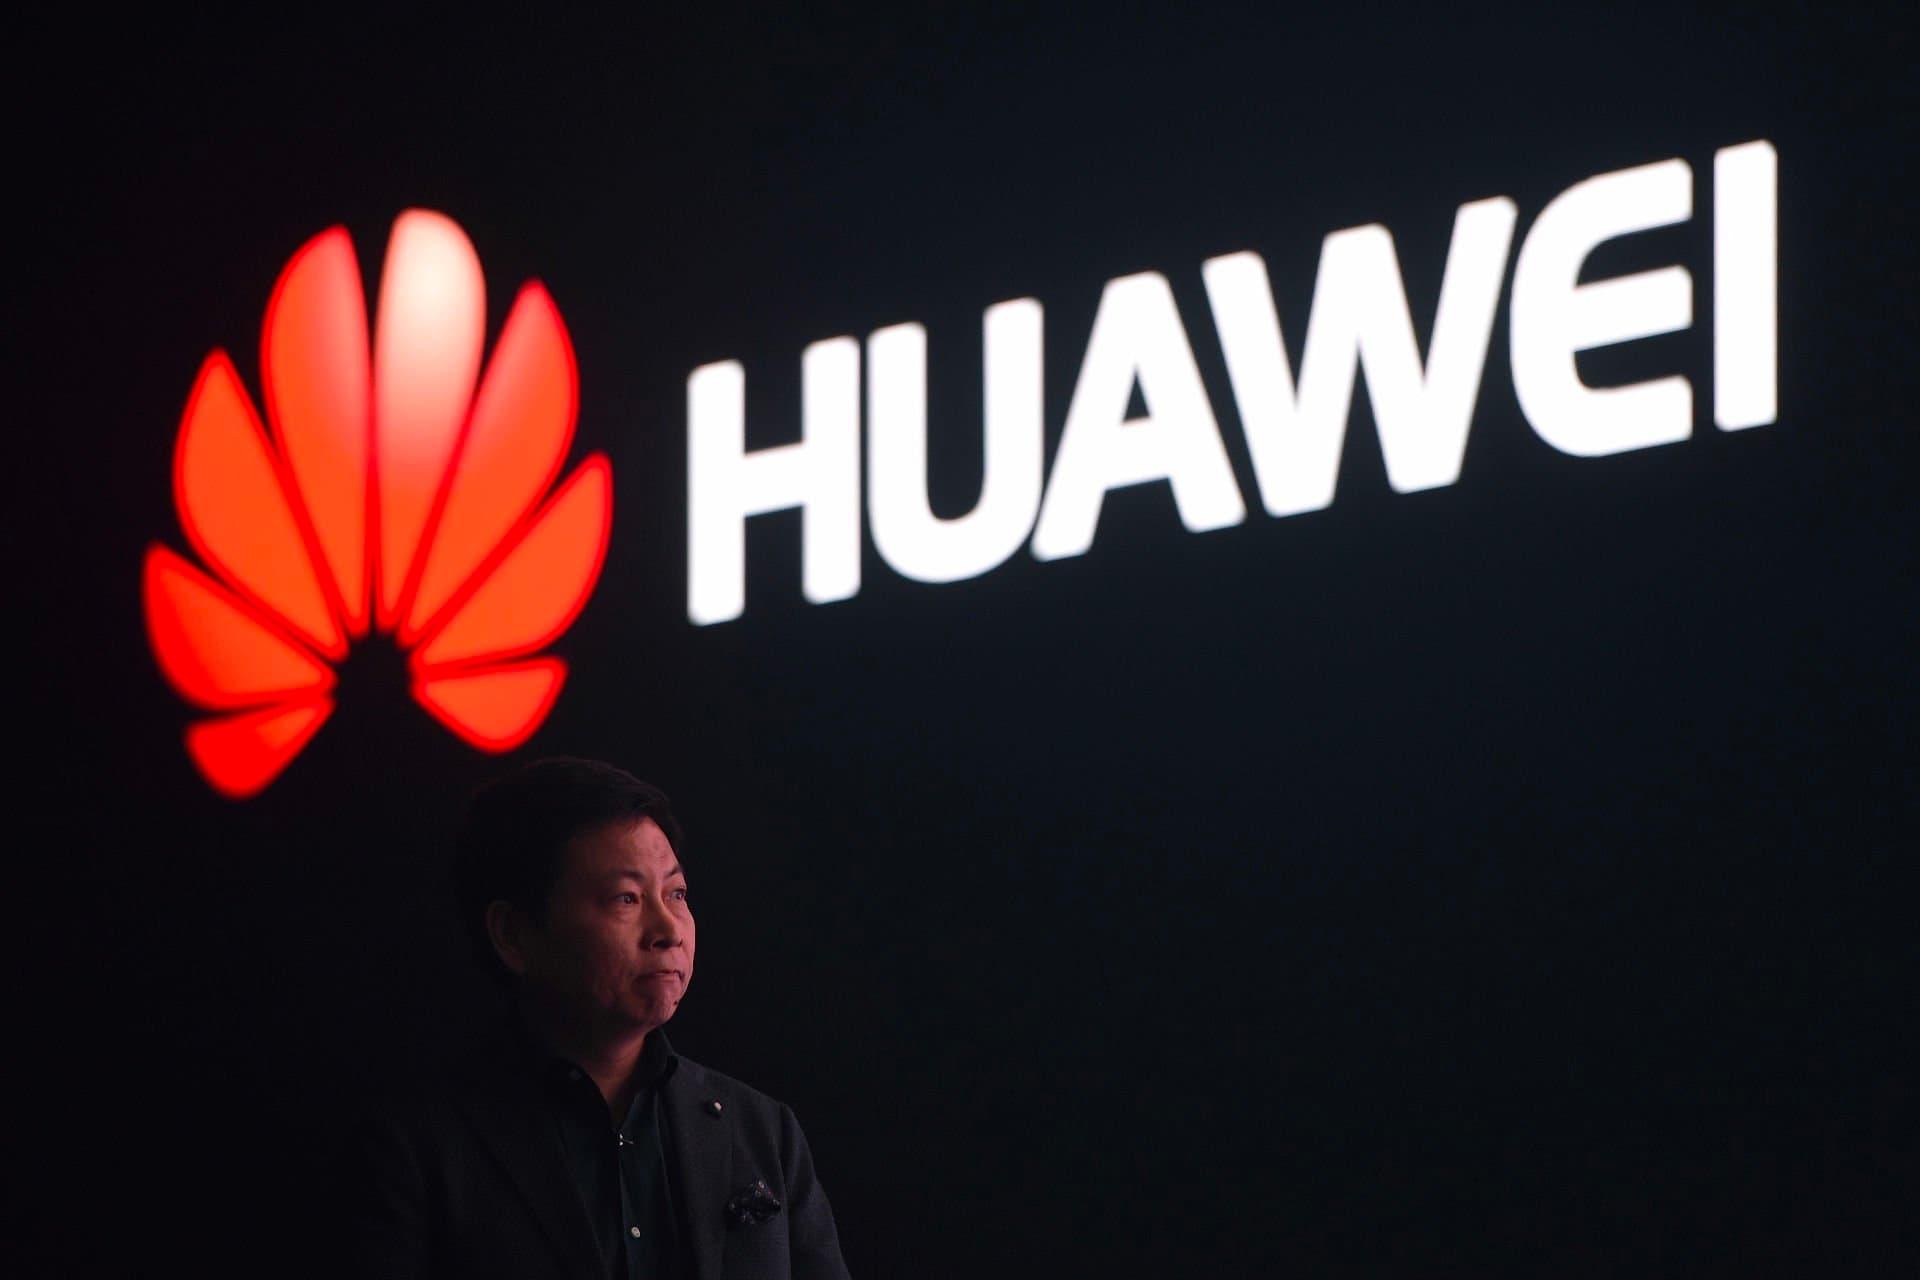 لوگو هواوی / Huawei در کنار ریچارد یو / Richard Yu مدیرعامل گروه مصرفی 